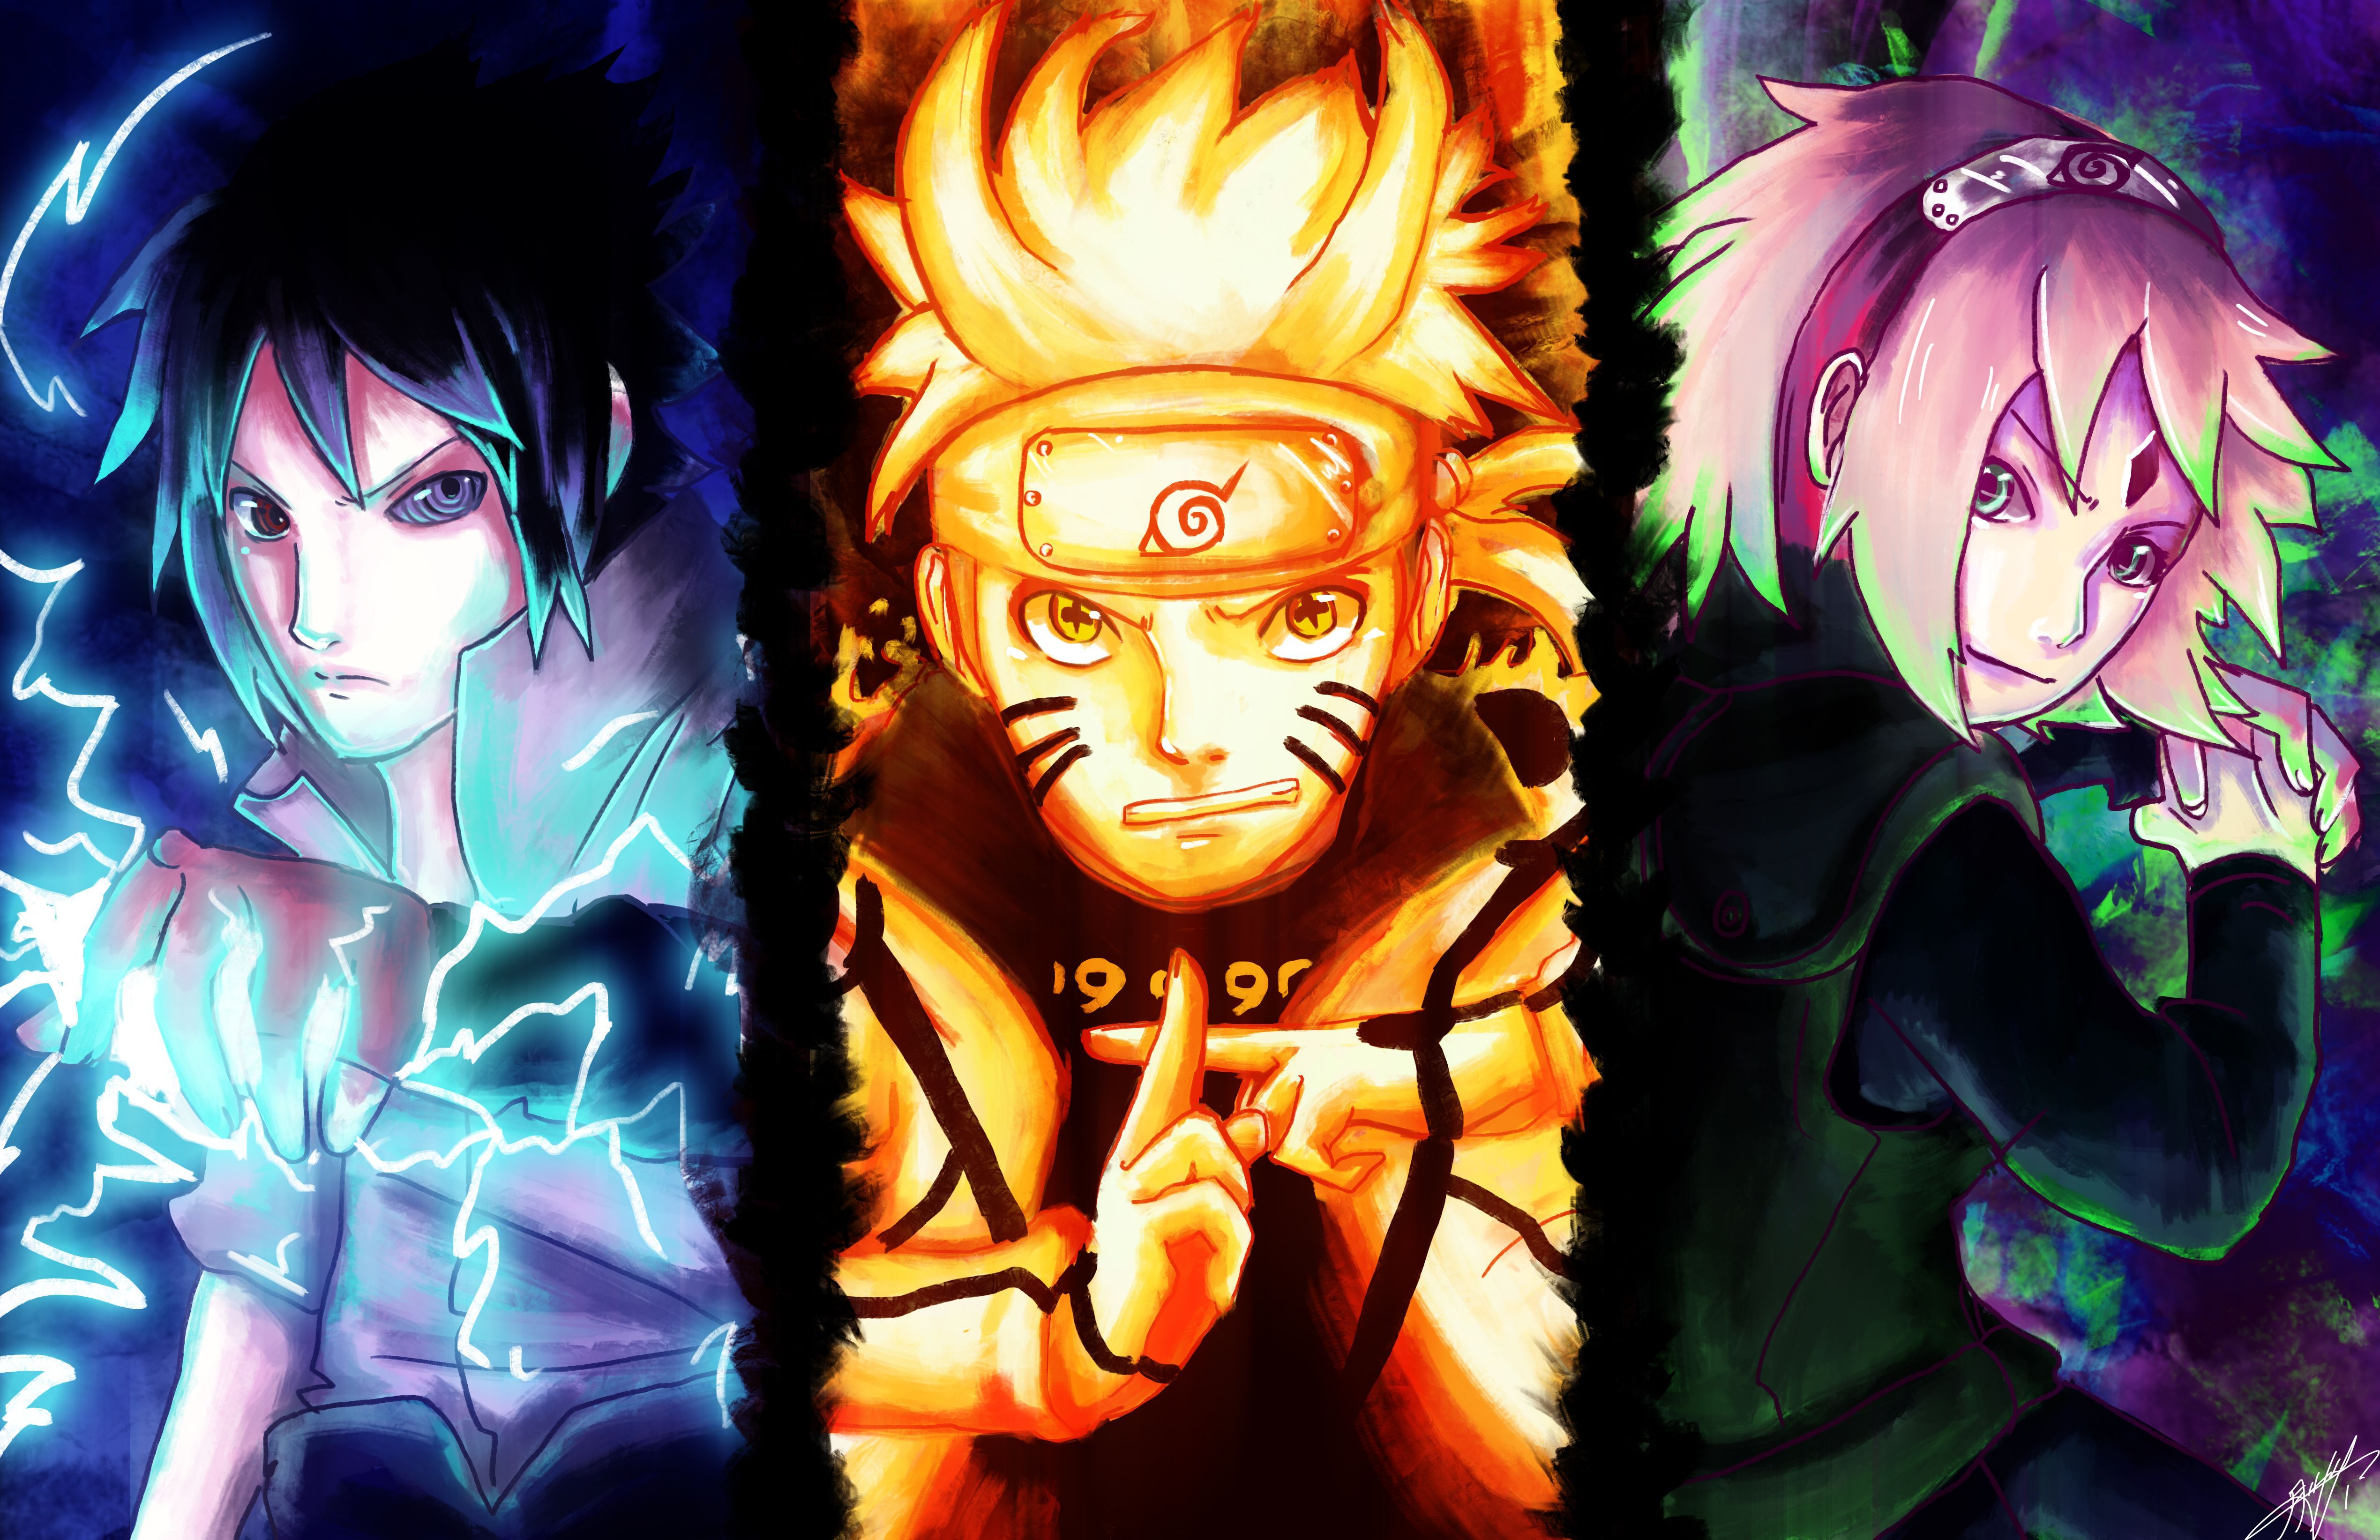 Naruto Wallpapers: Với bộ sưu tập hình nền về Naruto, bạn có thể thưởng thức những hình ảnh chất lượng cao về nhân vật yêu thích của mình. Từ Naruto, Sasuke đến Sakura, đều sẽ xuất hiện trong các bức ảnh sống động và đẹp mắt này.